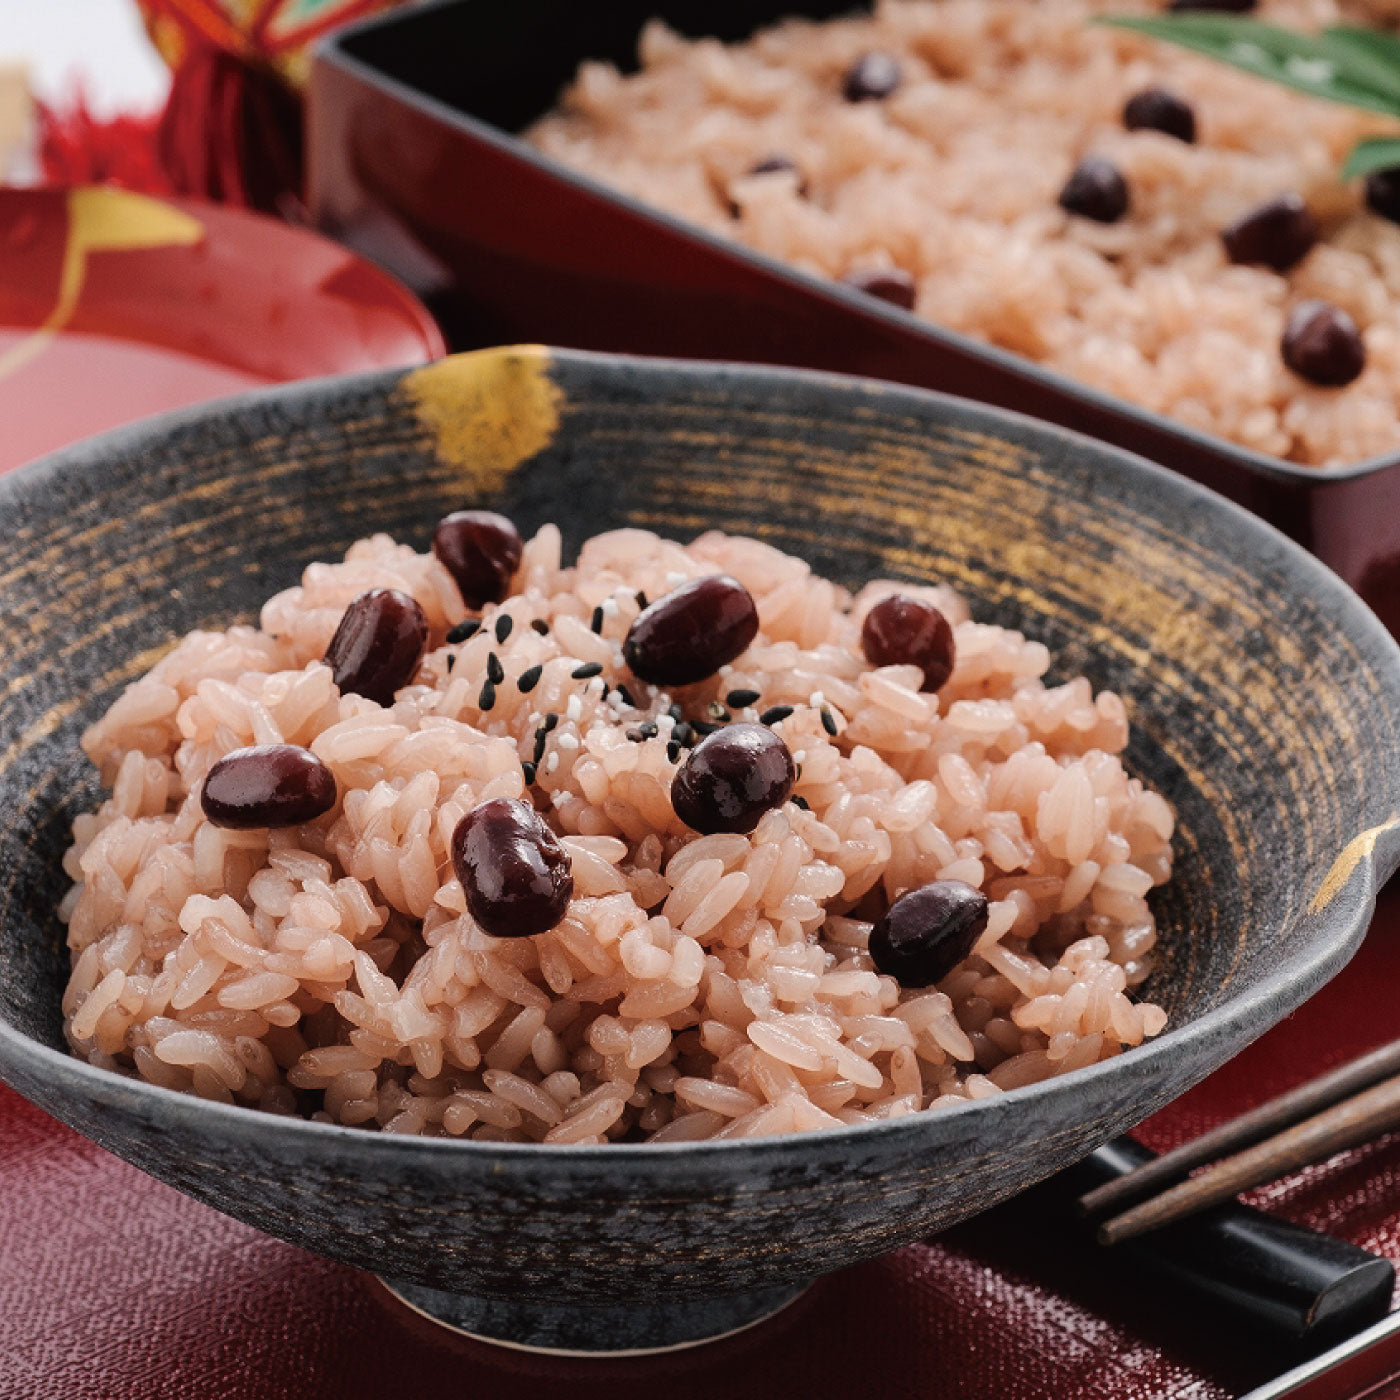 丹波大納言紅豆飯 Kyoto Azuki Red Bean Rice